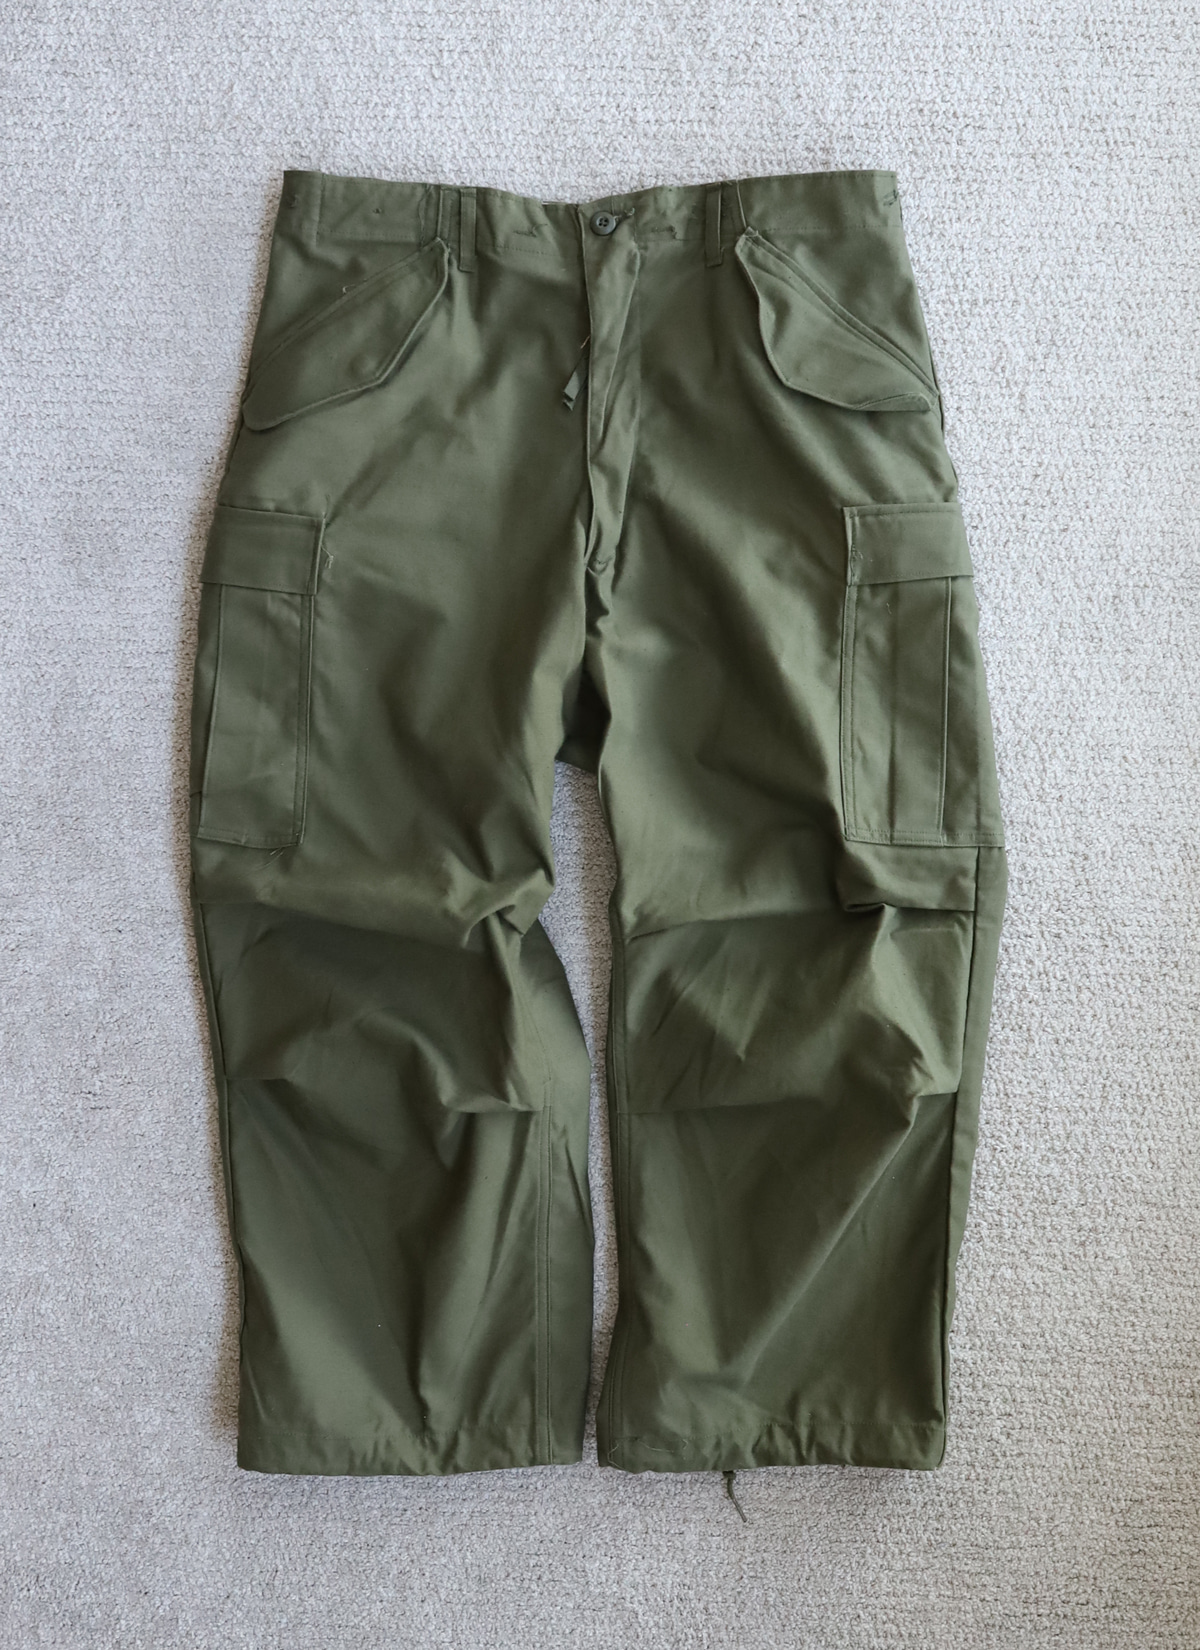 M-65 Field Pants